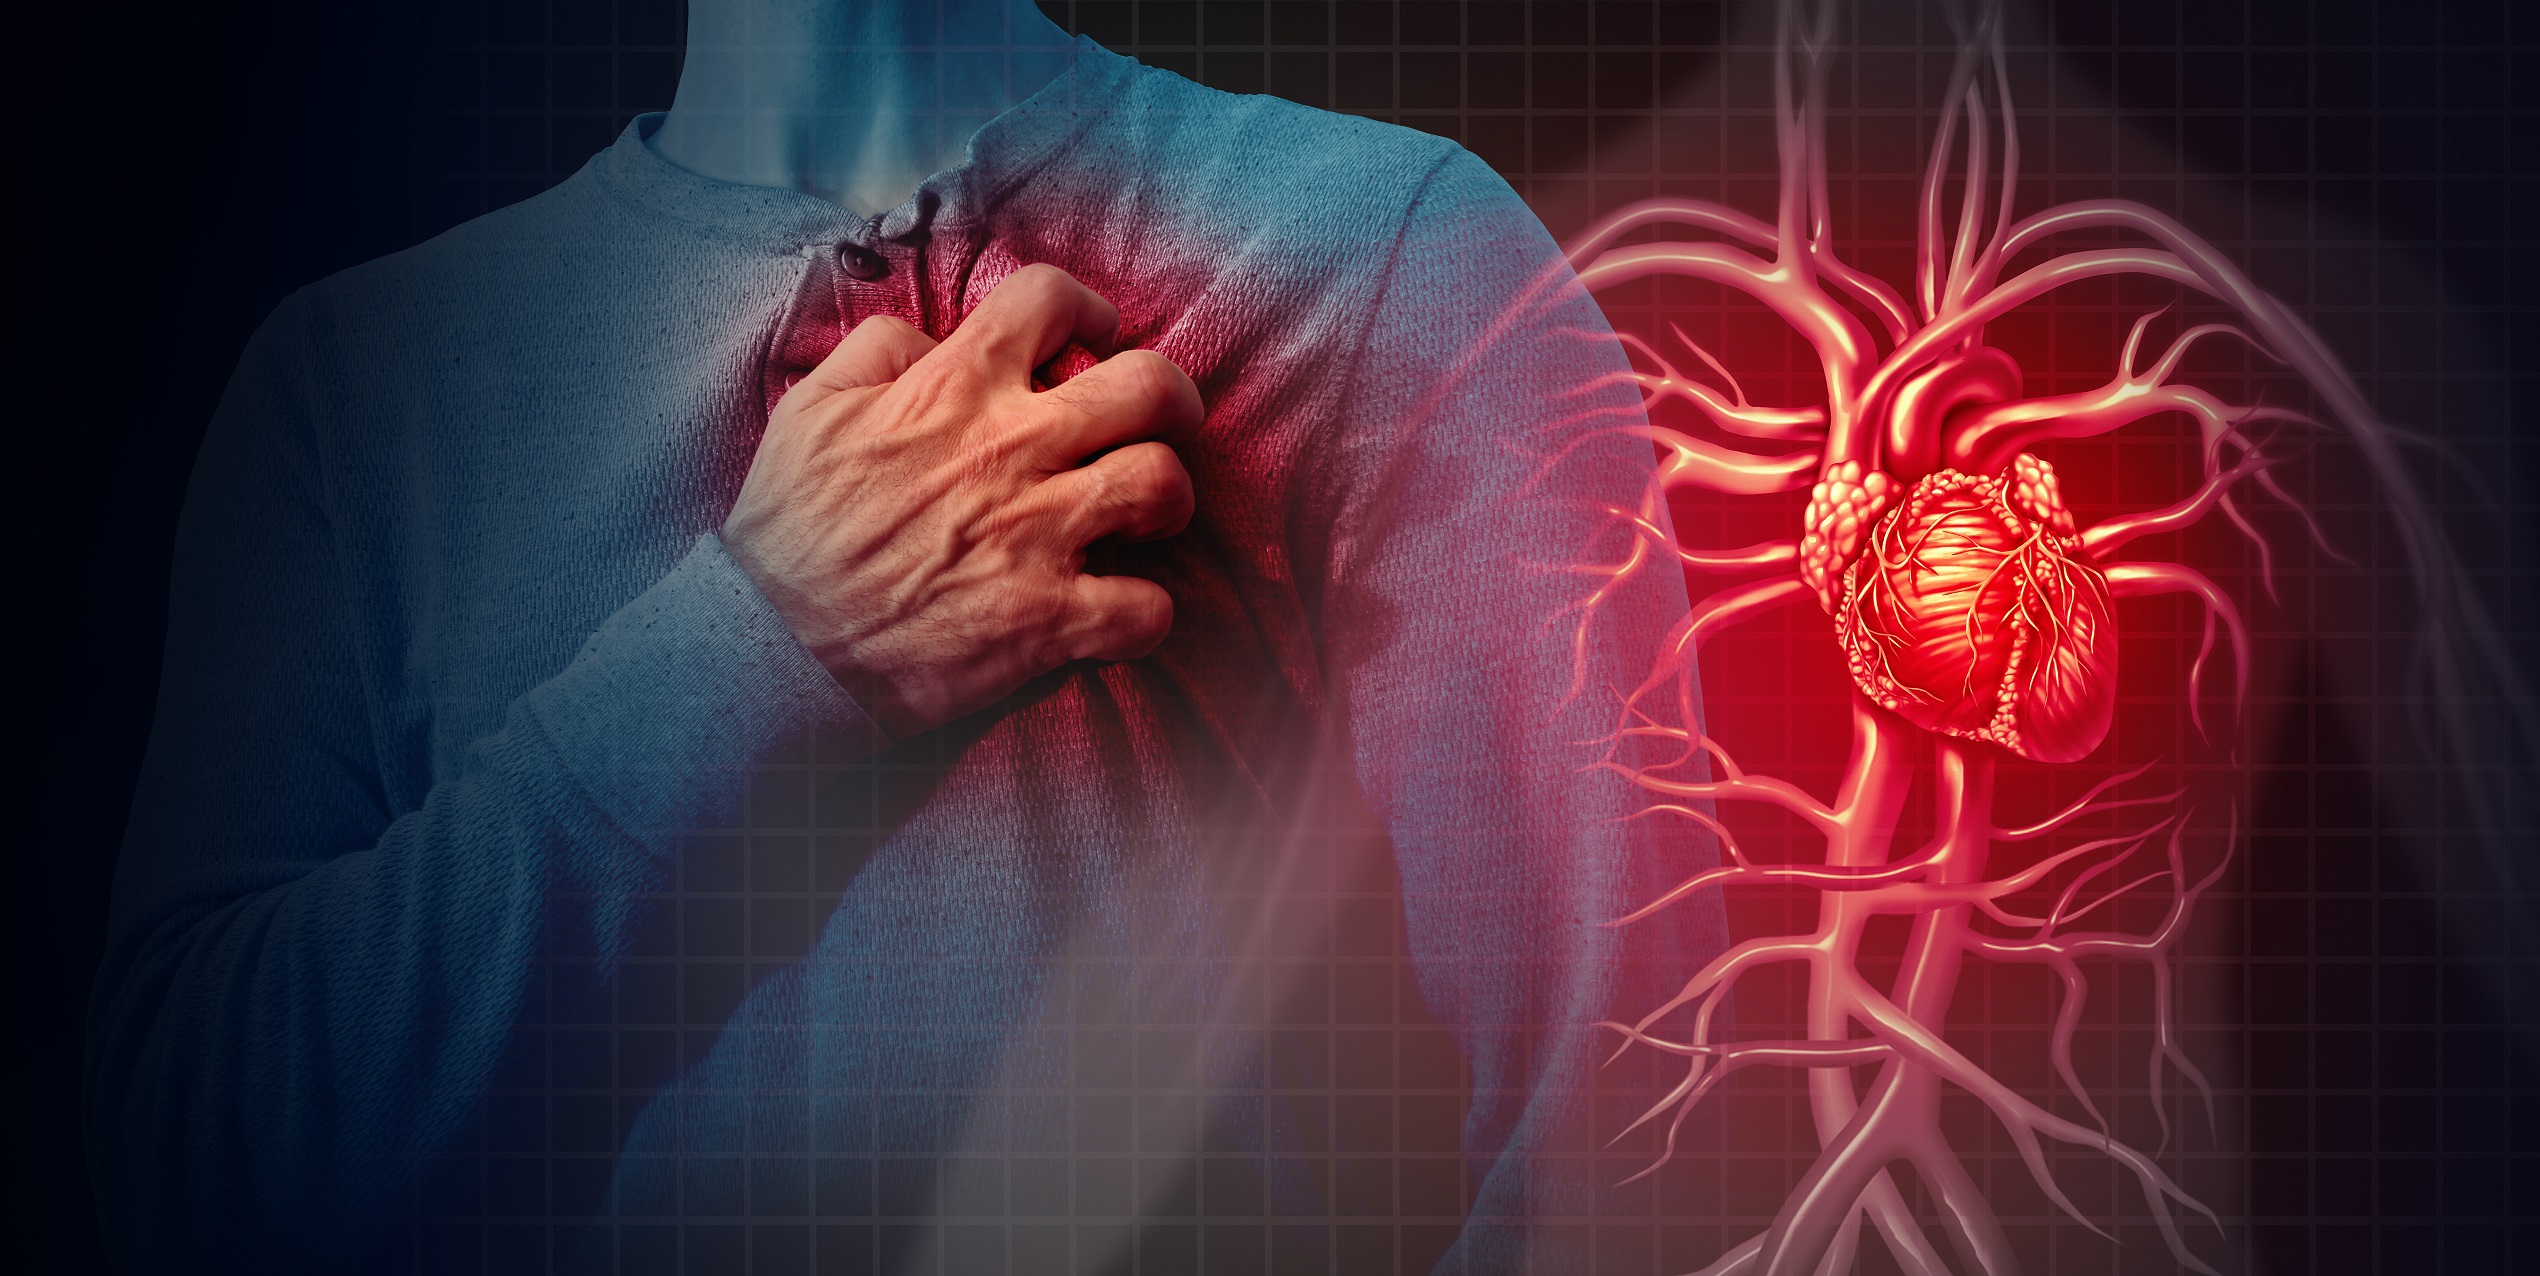 ¿Se esperan ataques cardíacos y accidentes cerebrovasculares en el futuro?  Práctica de curación